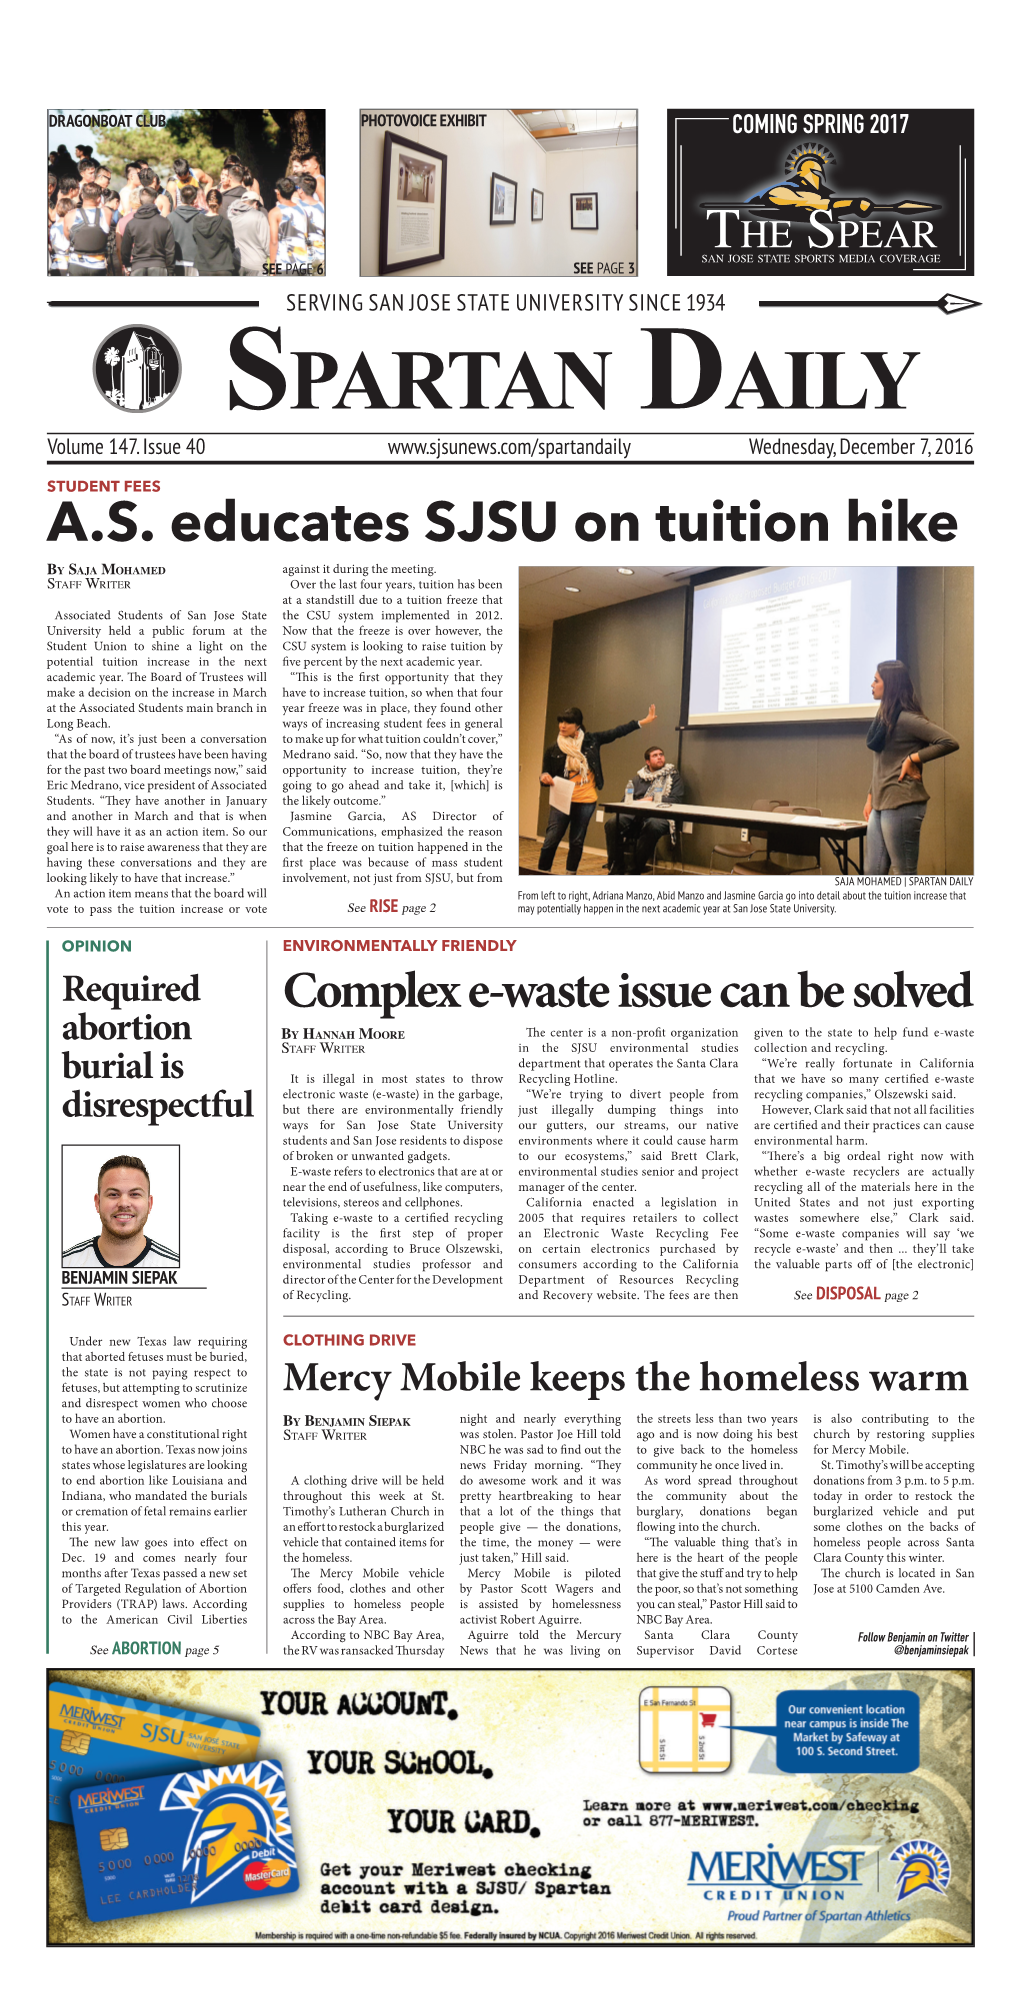 A.S. Educates SJSU on Tuition Hike